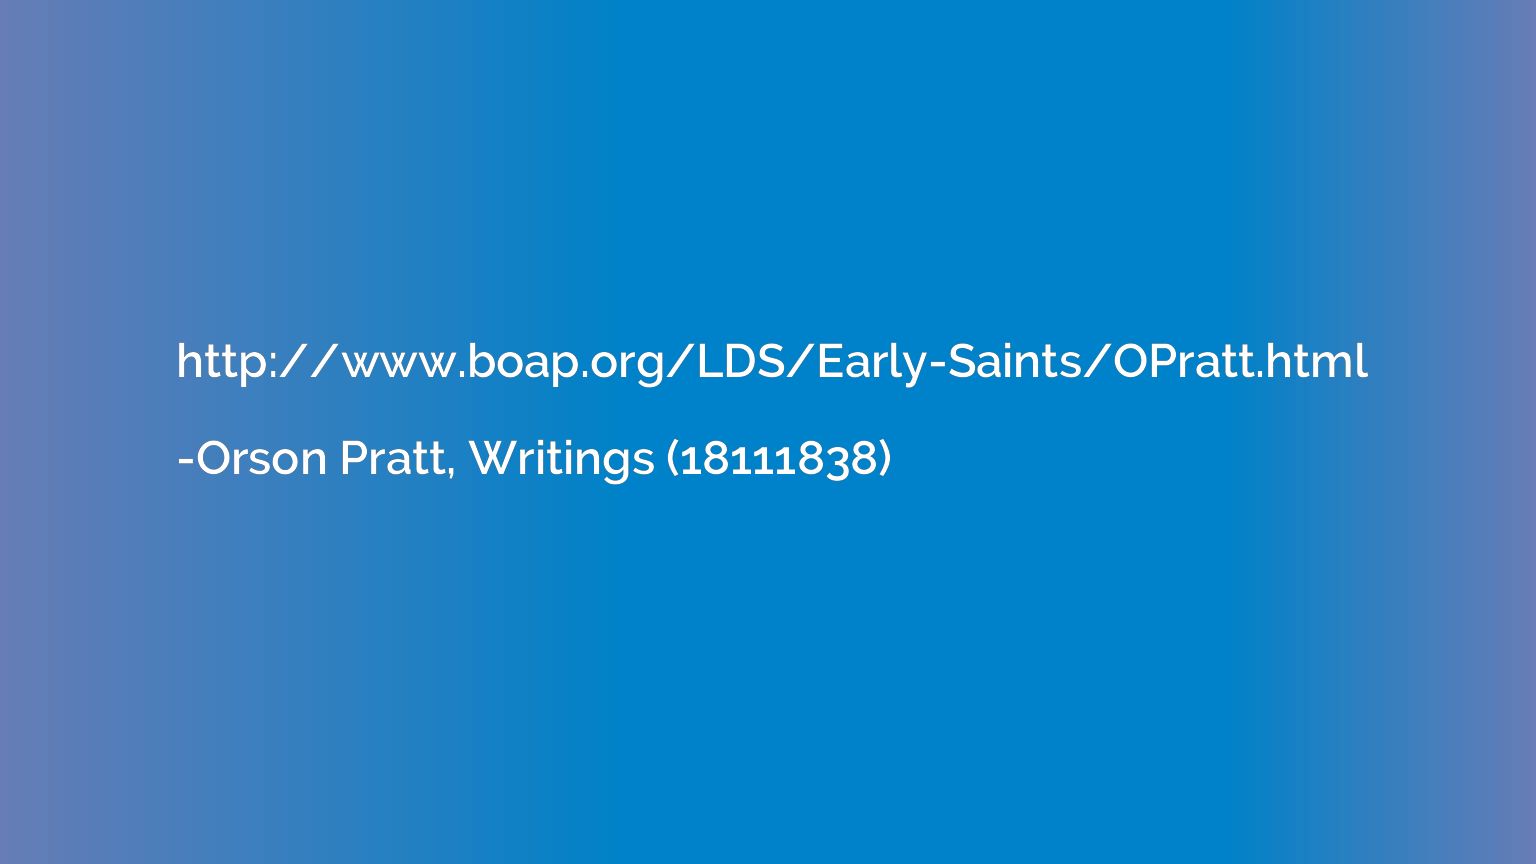 http://www.boap.org/LDS/Early-Saints/OPratt.html